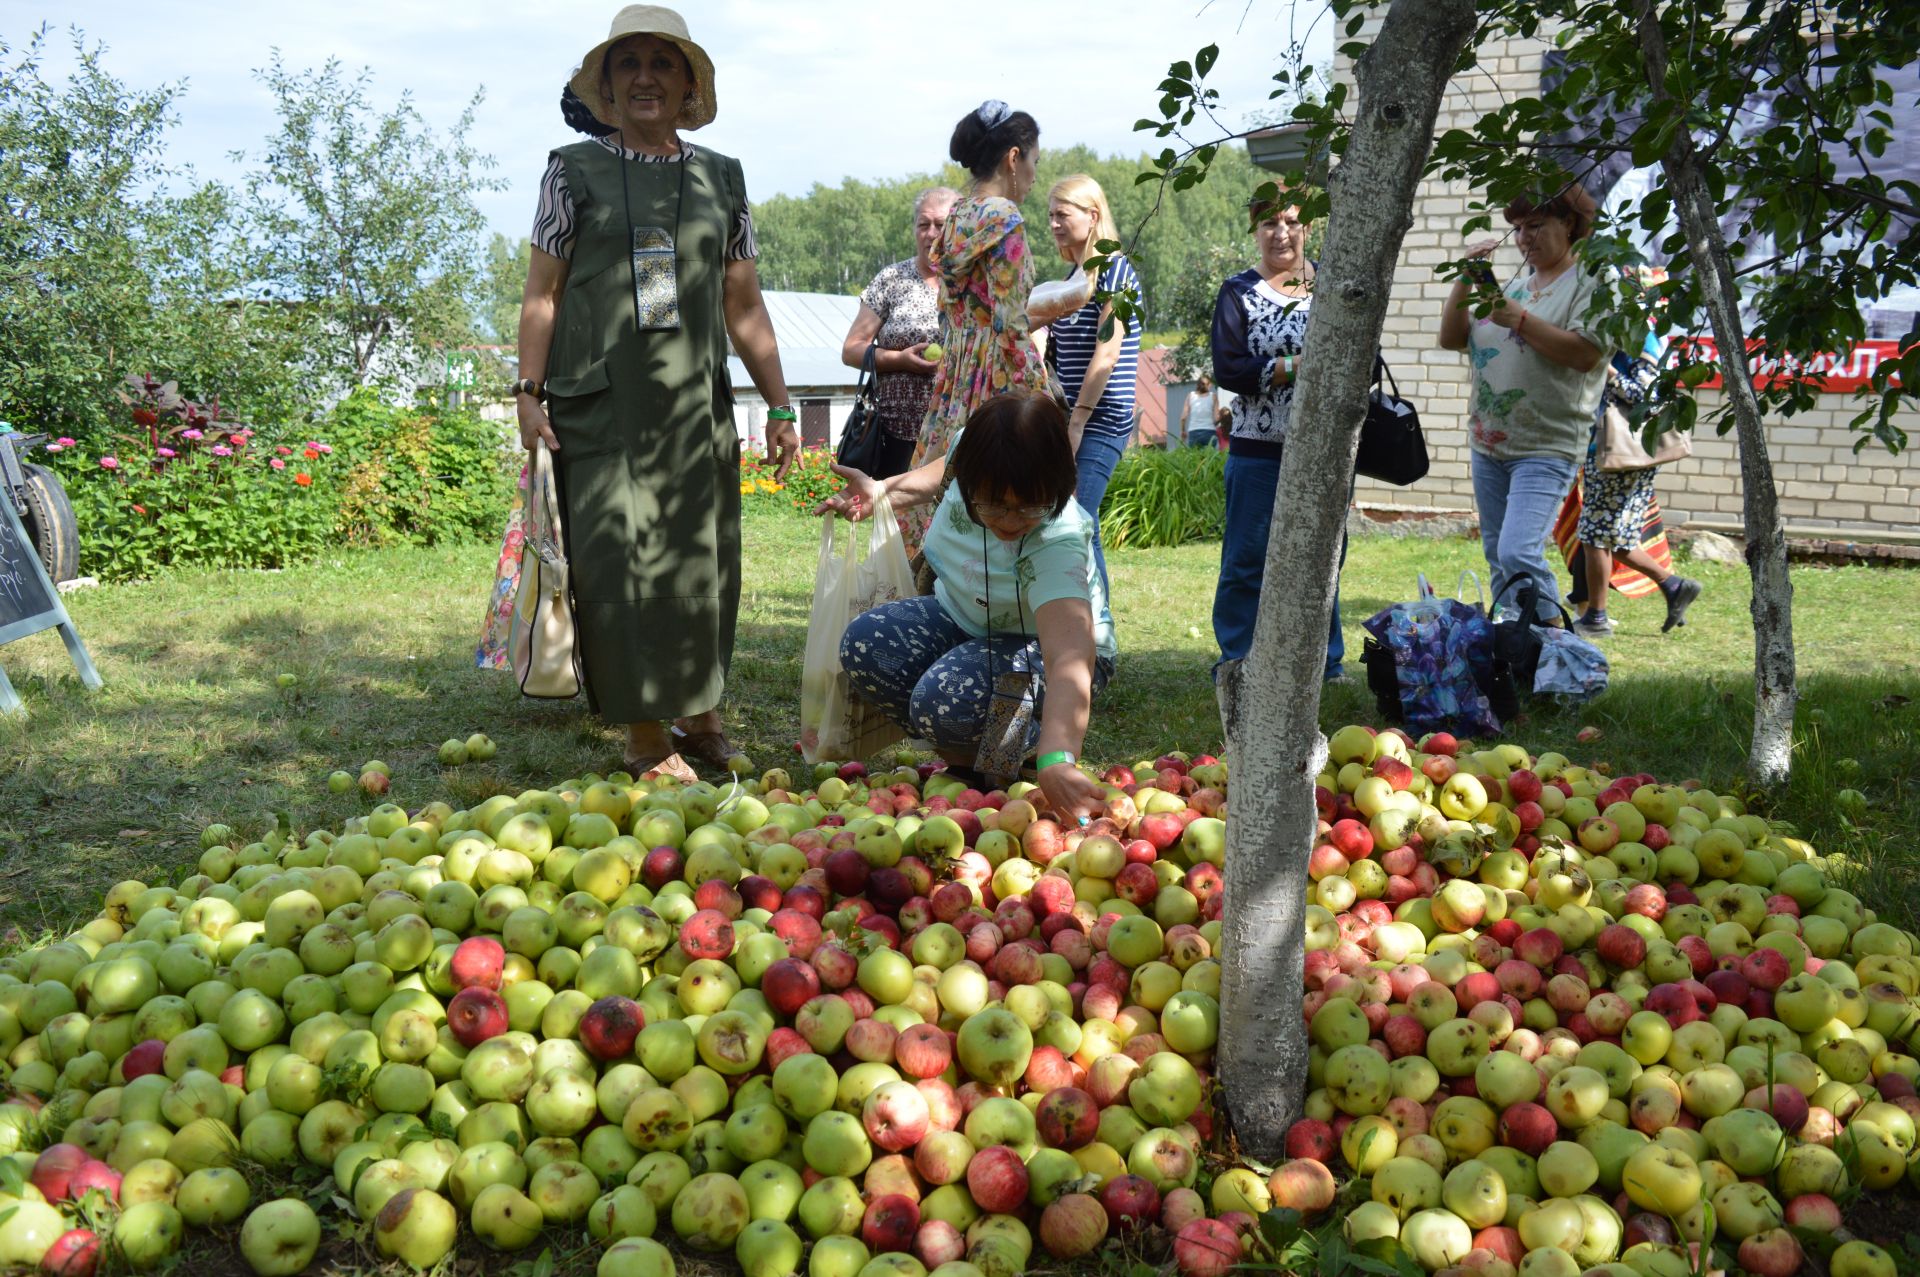 Яблочный спас в Красновидово фоторепортаж